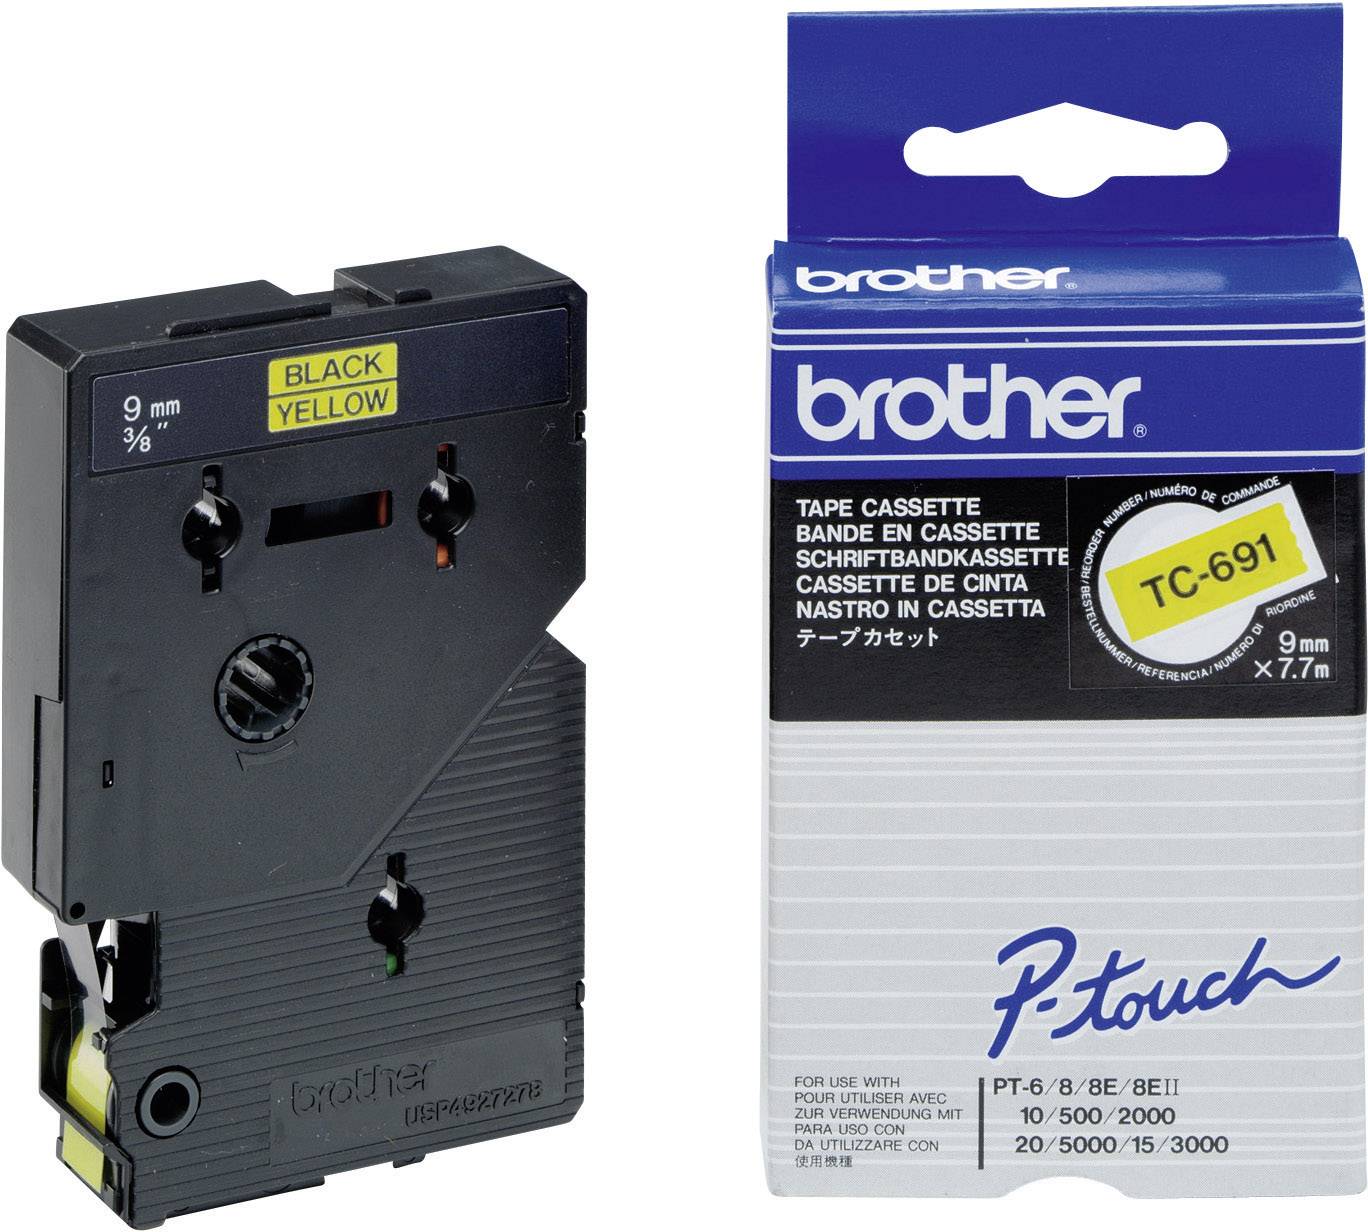 BROTHER TC691 Schriftbandkassette 9mmx7.7m gelb schwarz laminiert